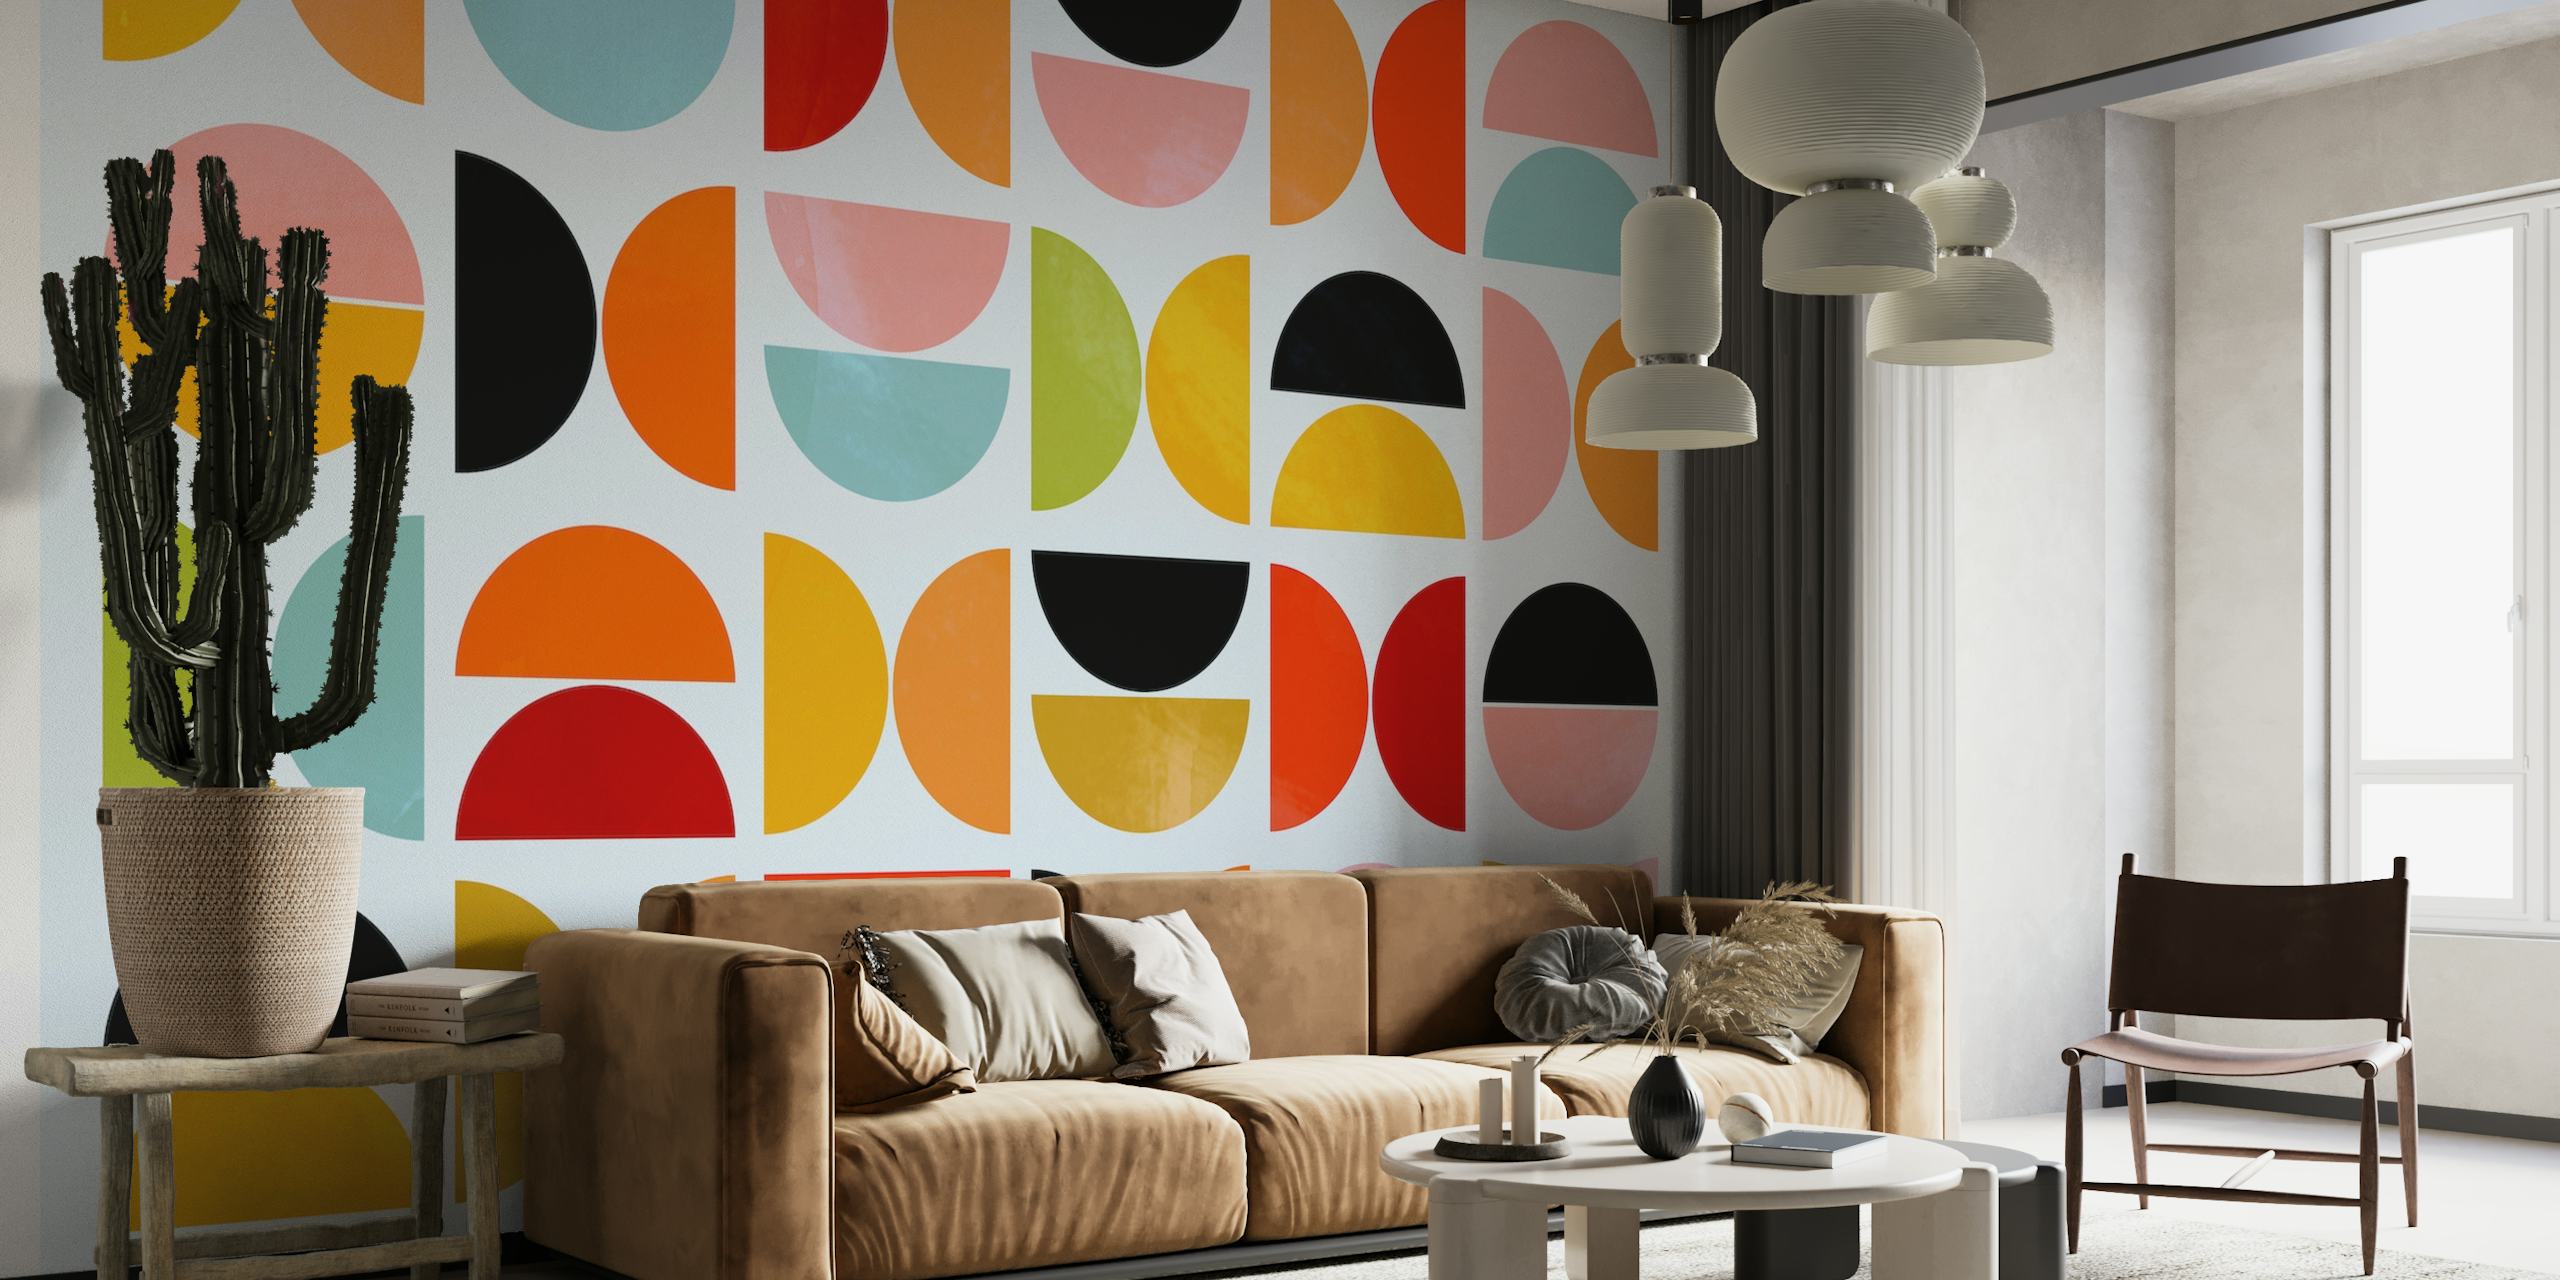 Vívidas formas geométricas en un diseño de mural inspirado en la Bauhaus.